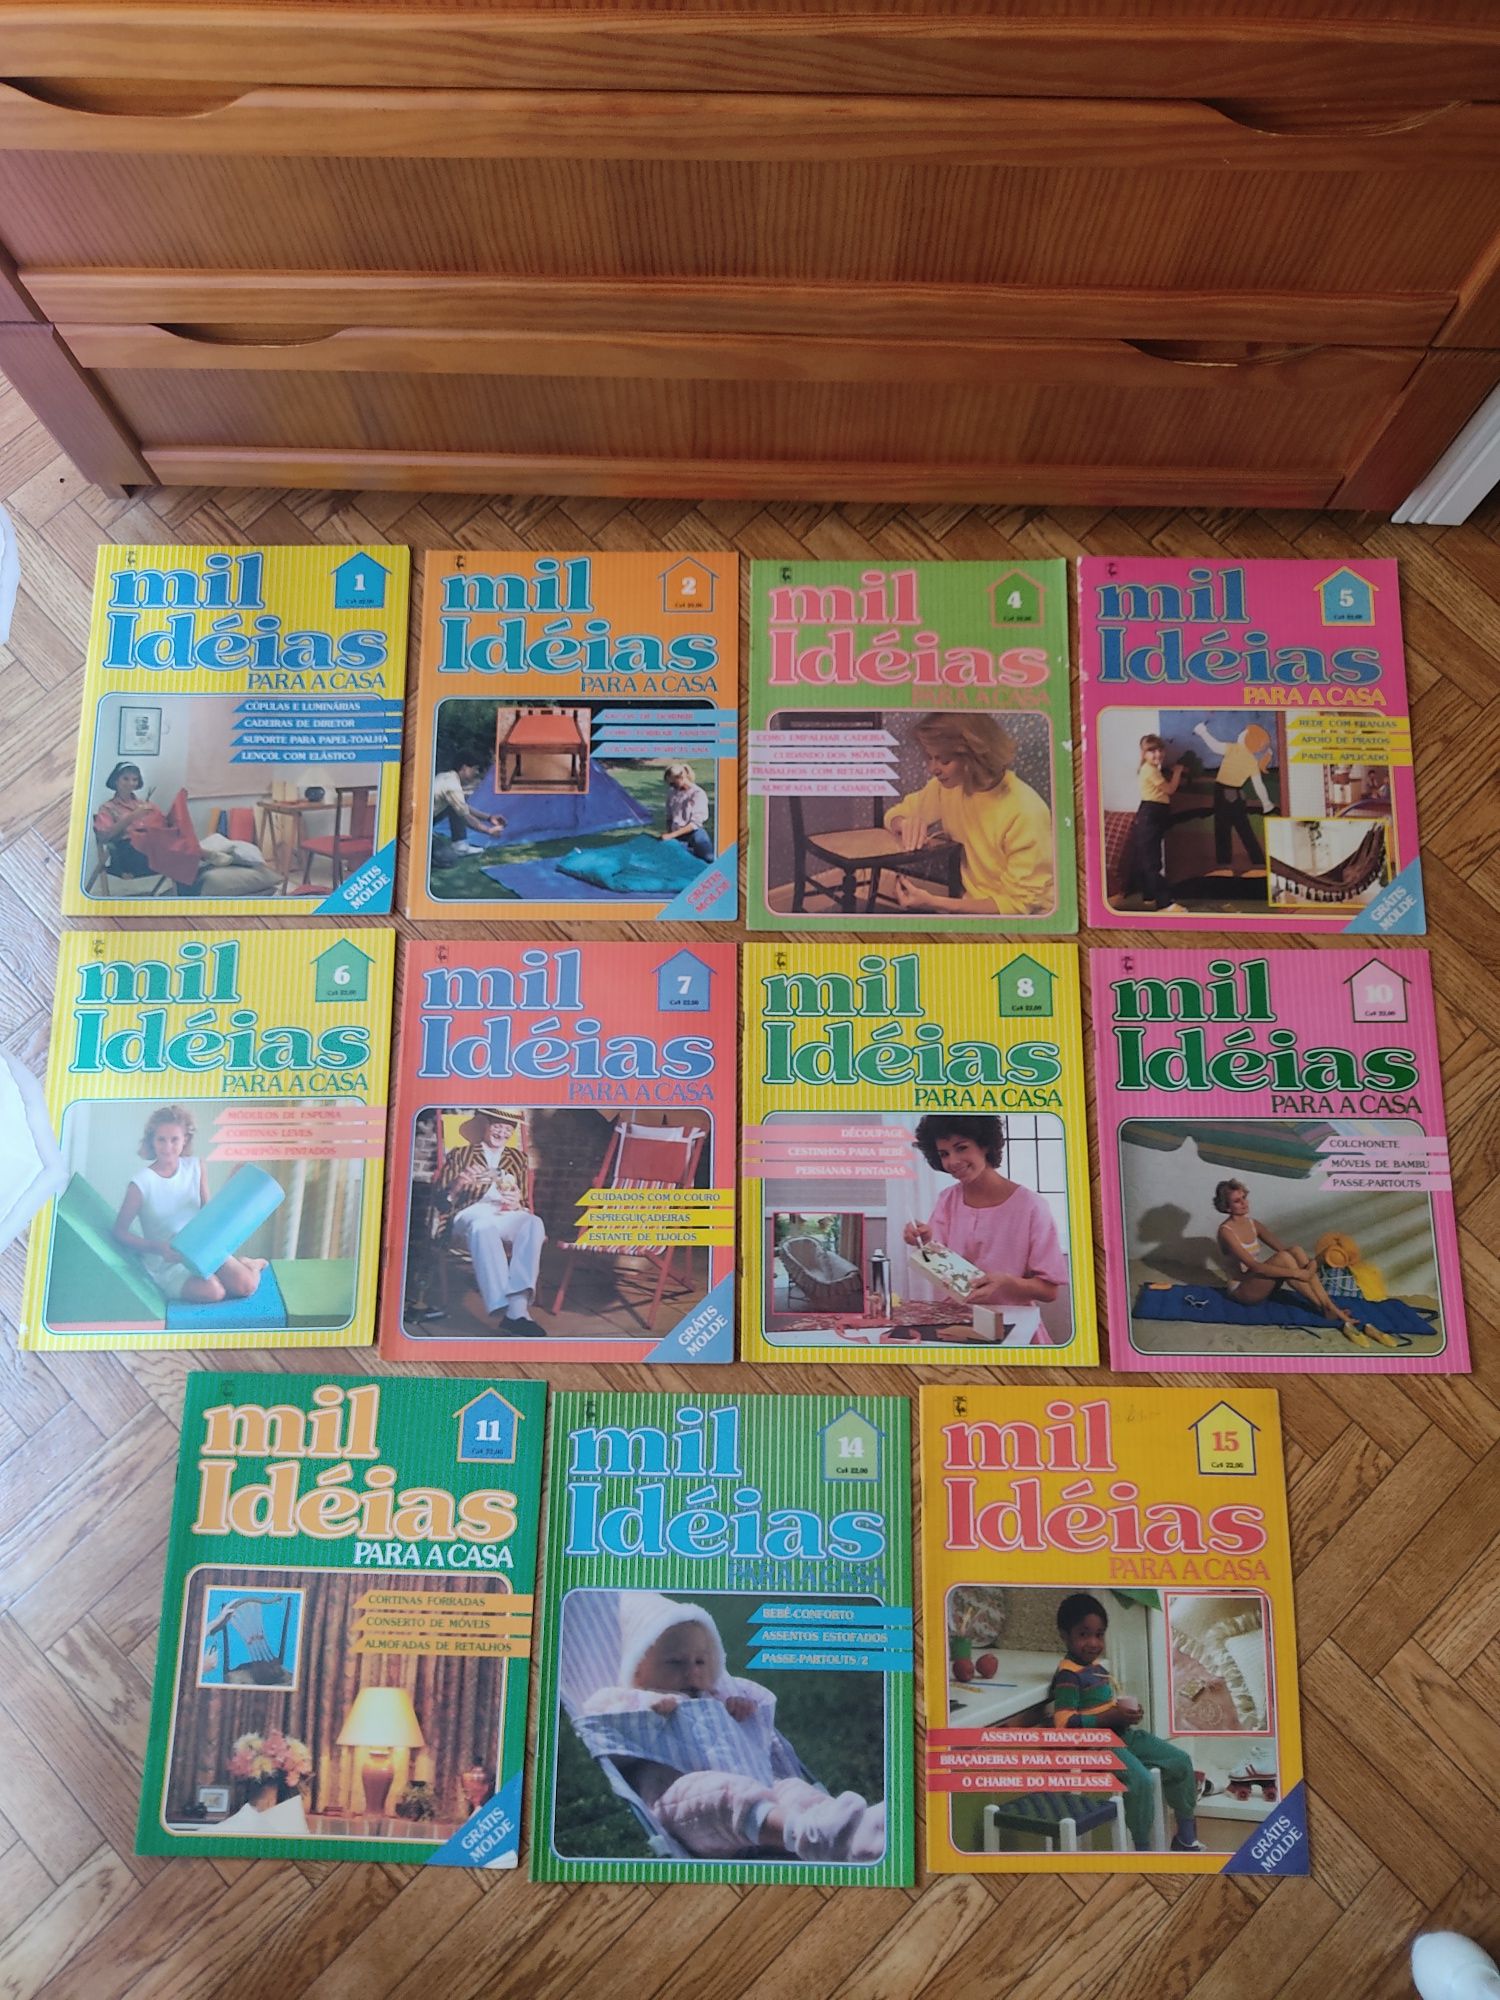 21 revistas "mil ideias para a casa" 0,75€ unidade